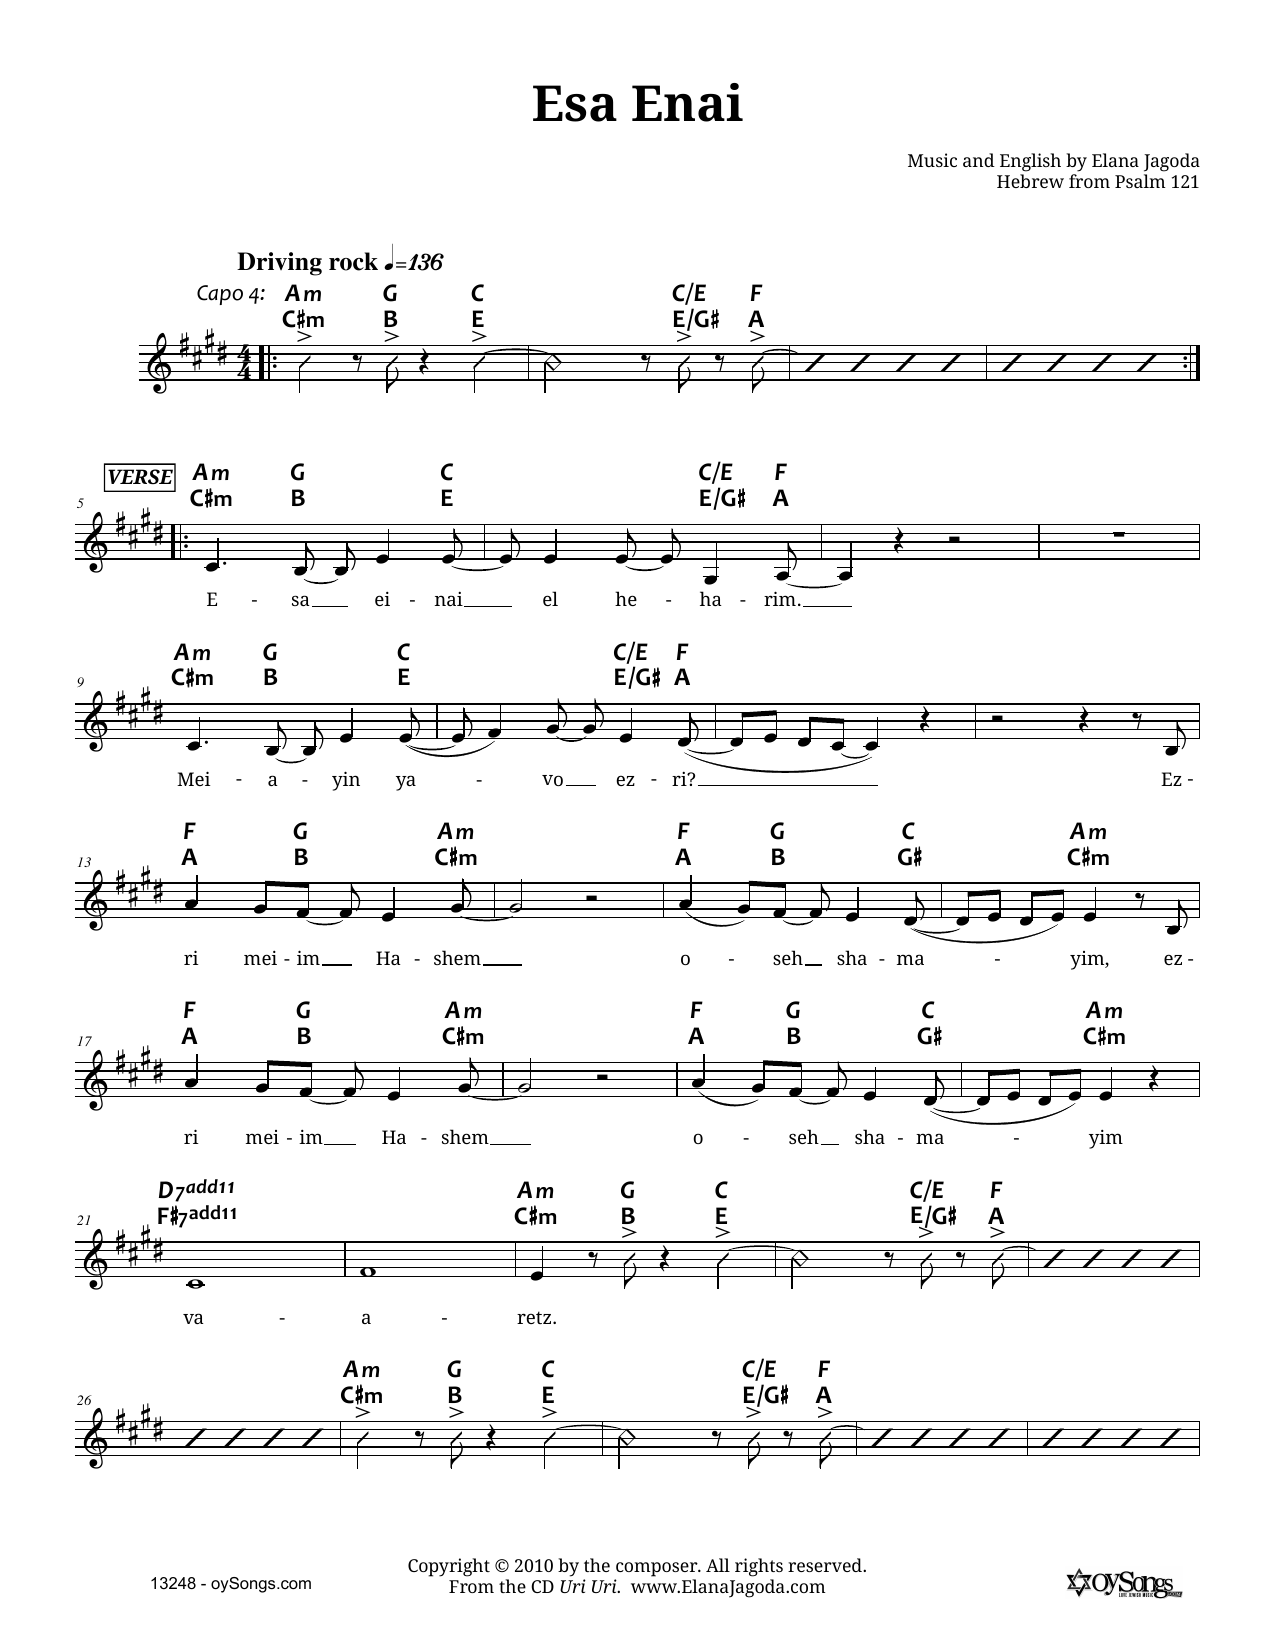 Elana Jagoda Esa Enai Sheet Music Notes & Chords for Melody Line, Lyrics & Chords - Download or Print PDF